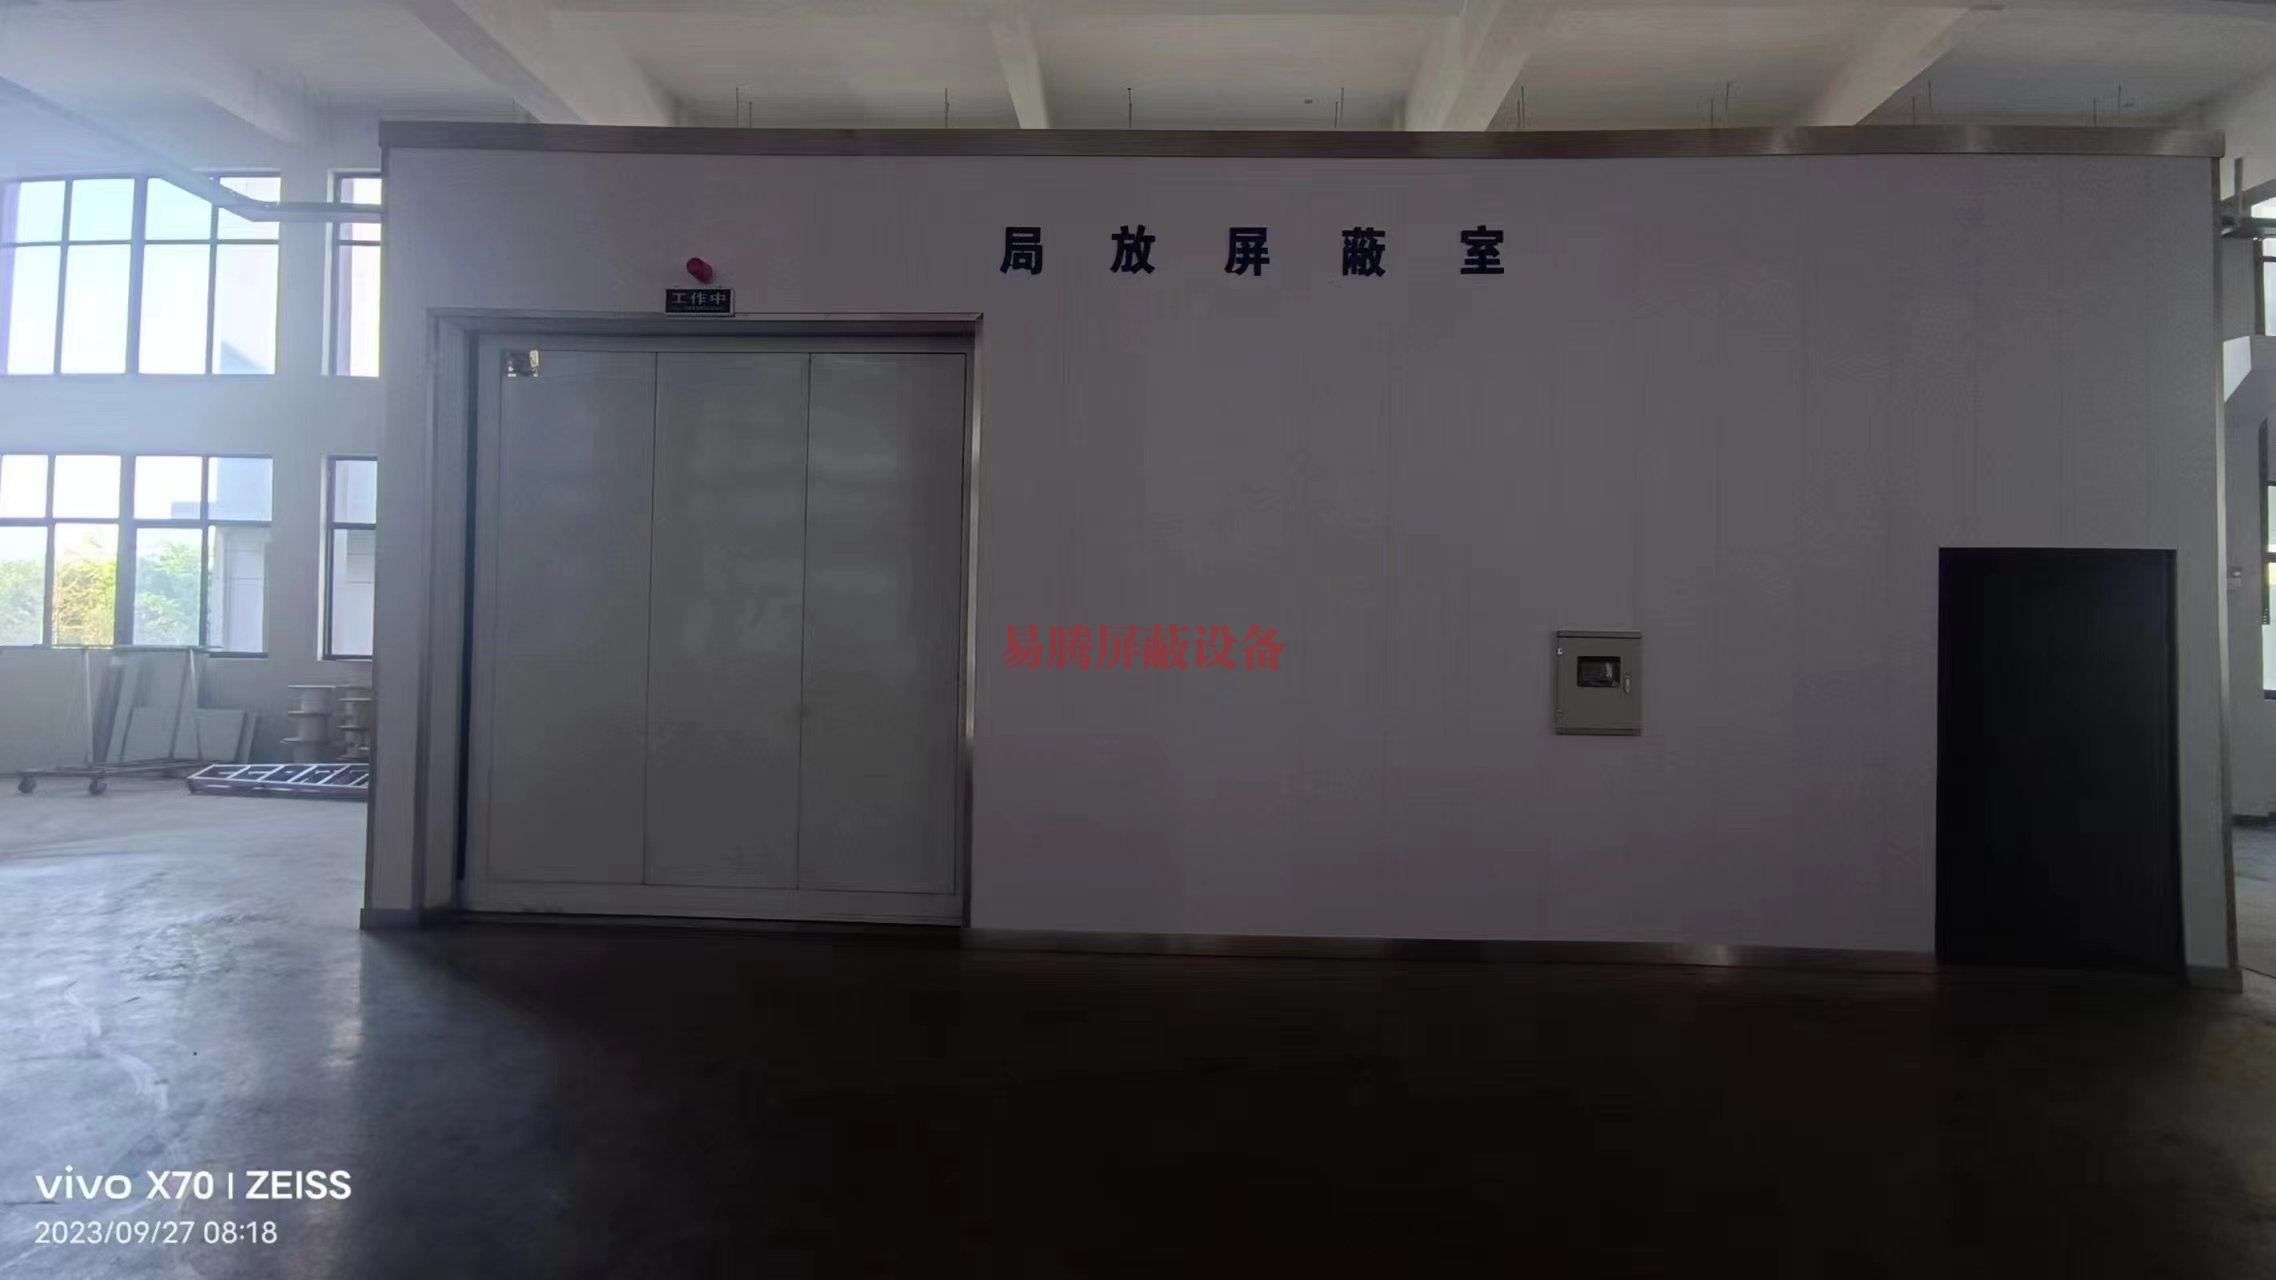 上海局放屏蔽室